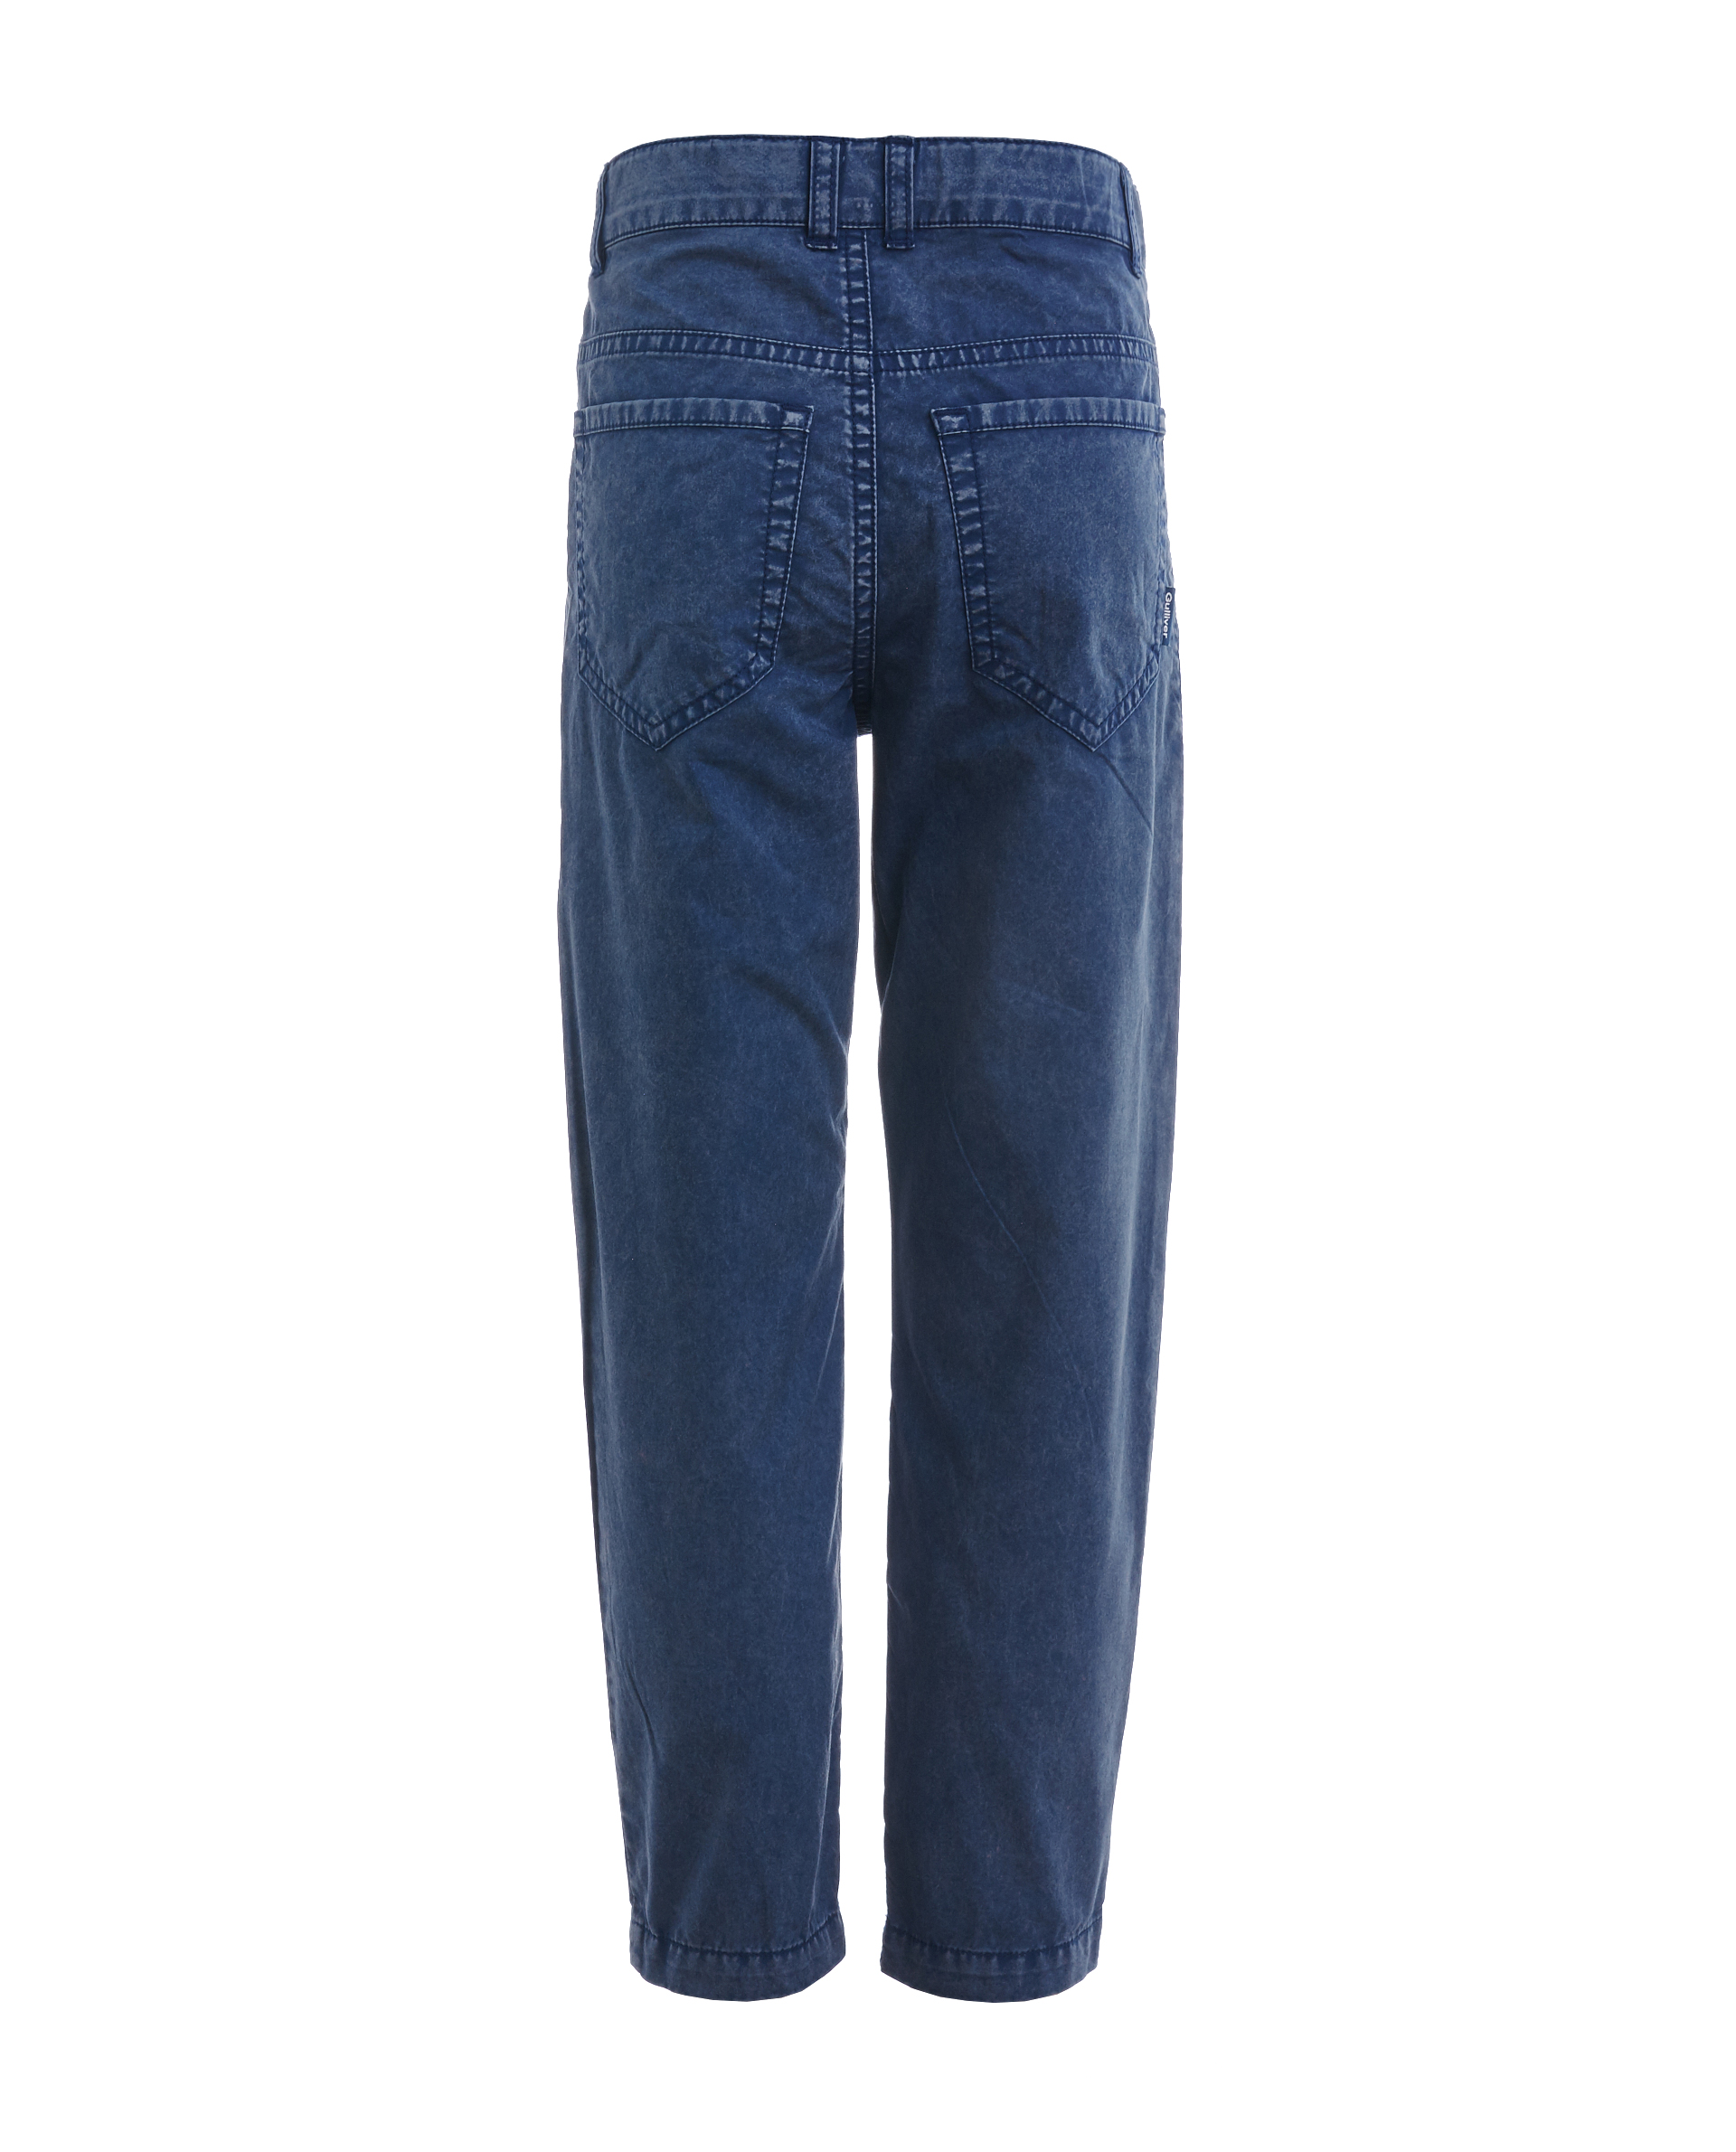 Синие брюки с винтажным эффектом Gulliver 11906BMC6305, размер 116, цвет синий - фото 2